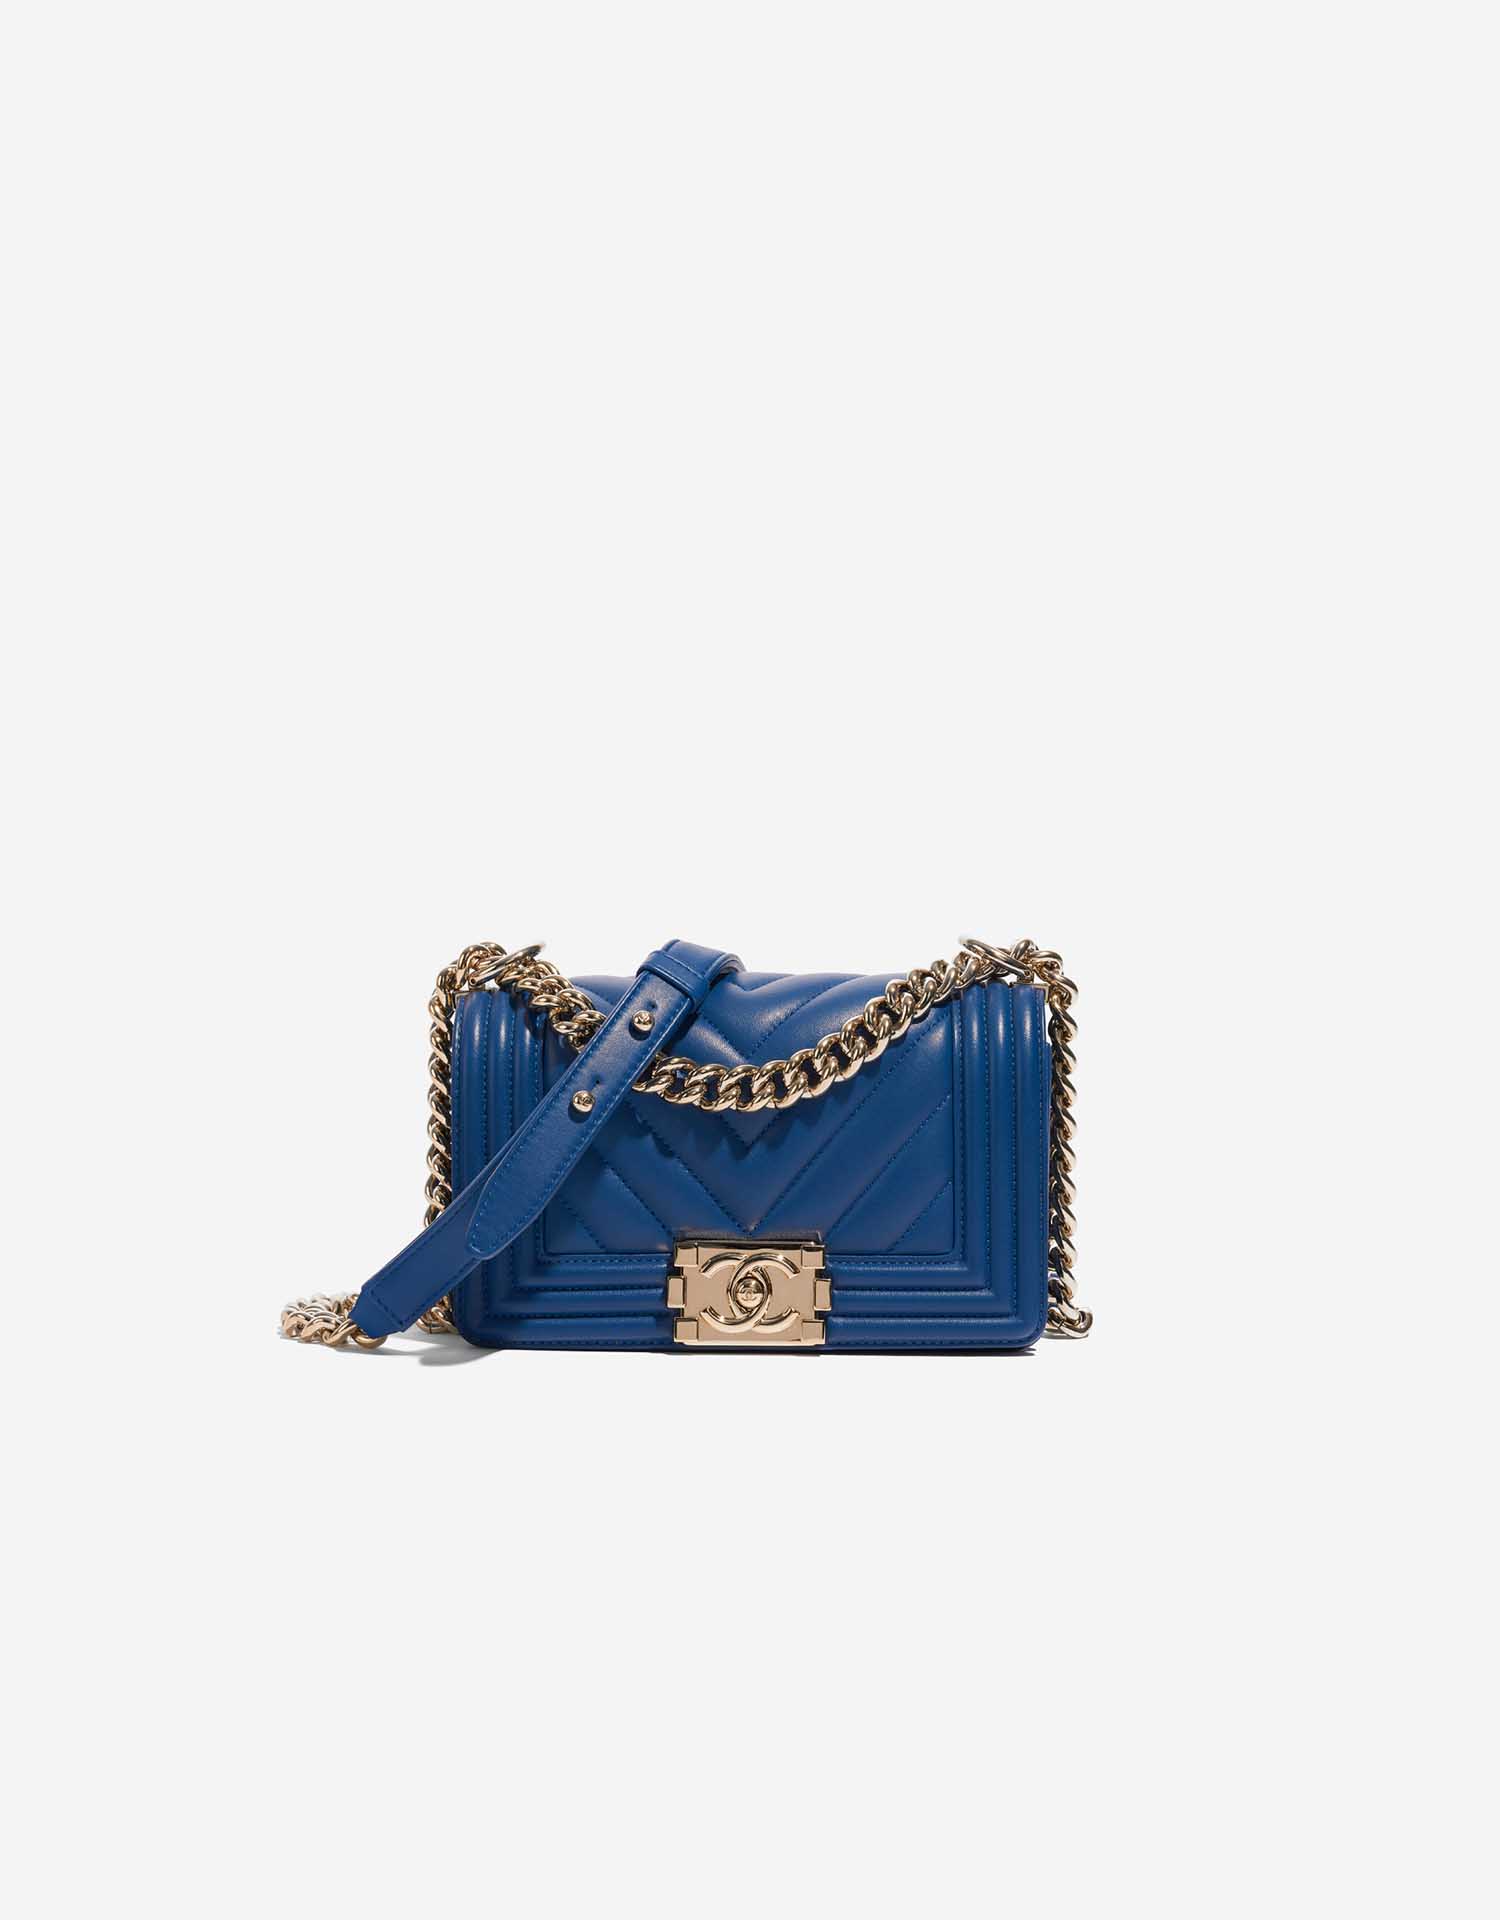 Chanel Boy Velvet  Lambskin Light Blue Small Flap Bag with Gold Hardware   eBay